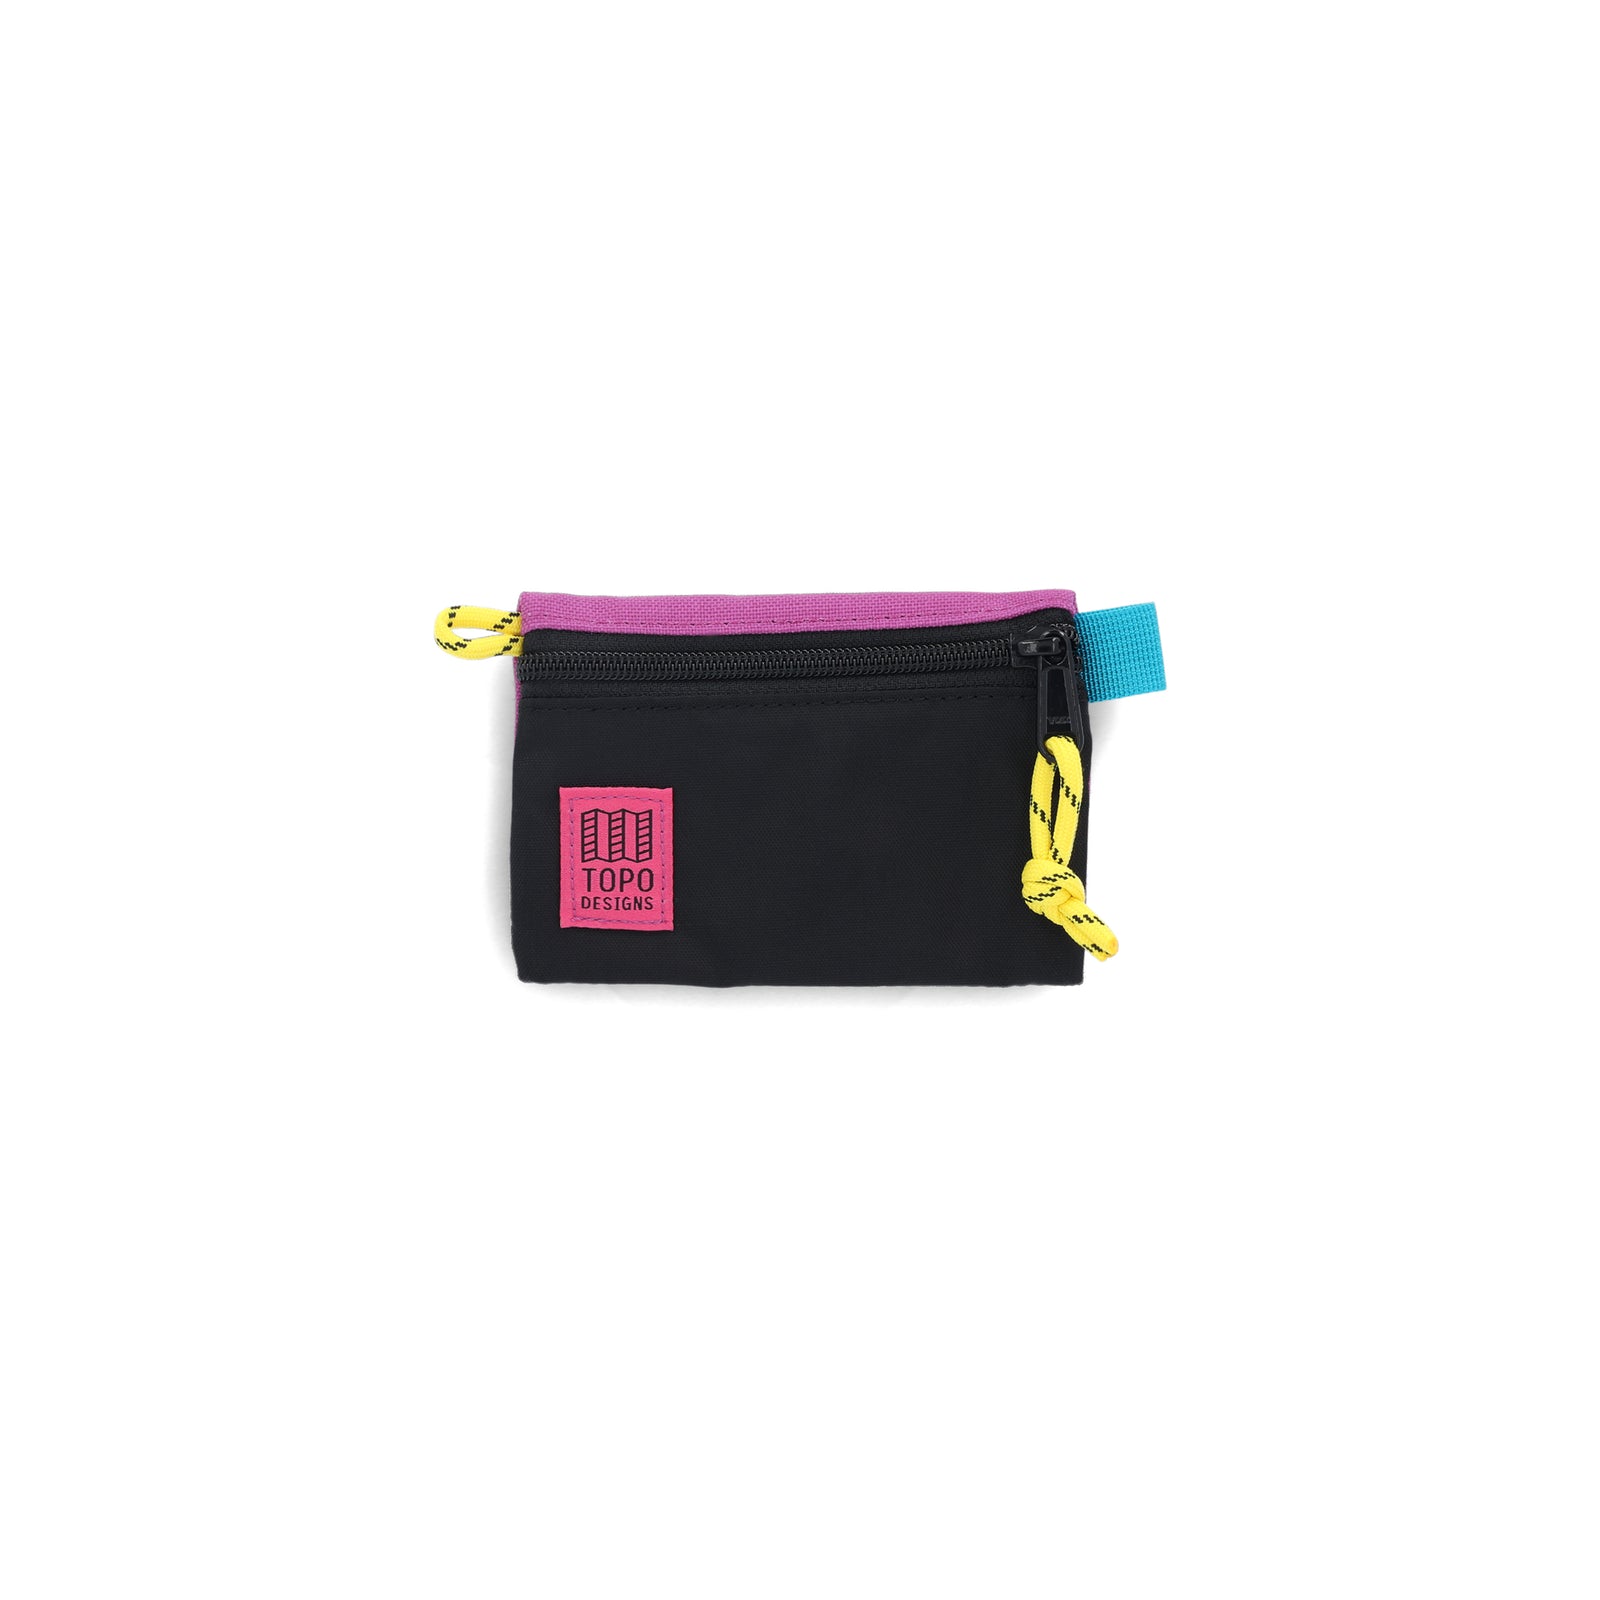 Topo Designs Accessory Bag in "Micro" "Black / Grape - Recycled" purple nylon.